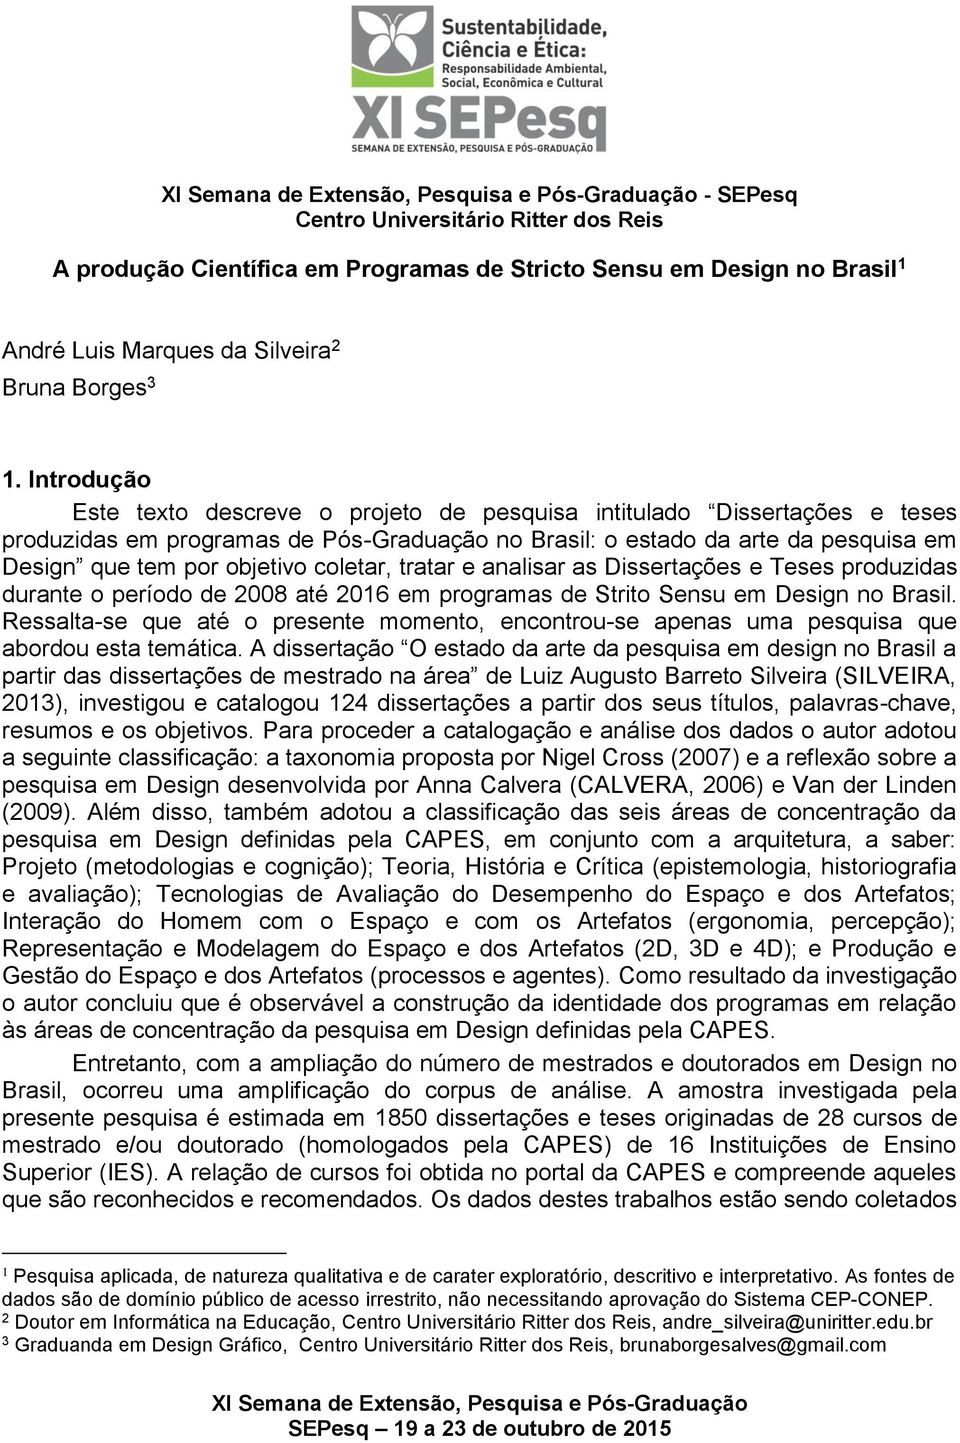 coletar, tratar e analisar as Dissertações e Teses produzidas durante o período de 2008 até 2016 em programas de Strito Sensu em Design no Brasil.